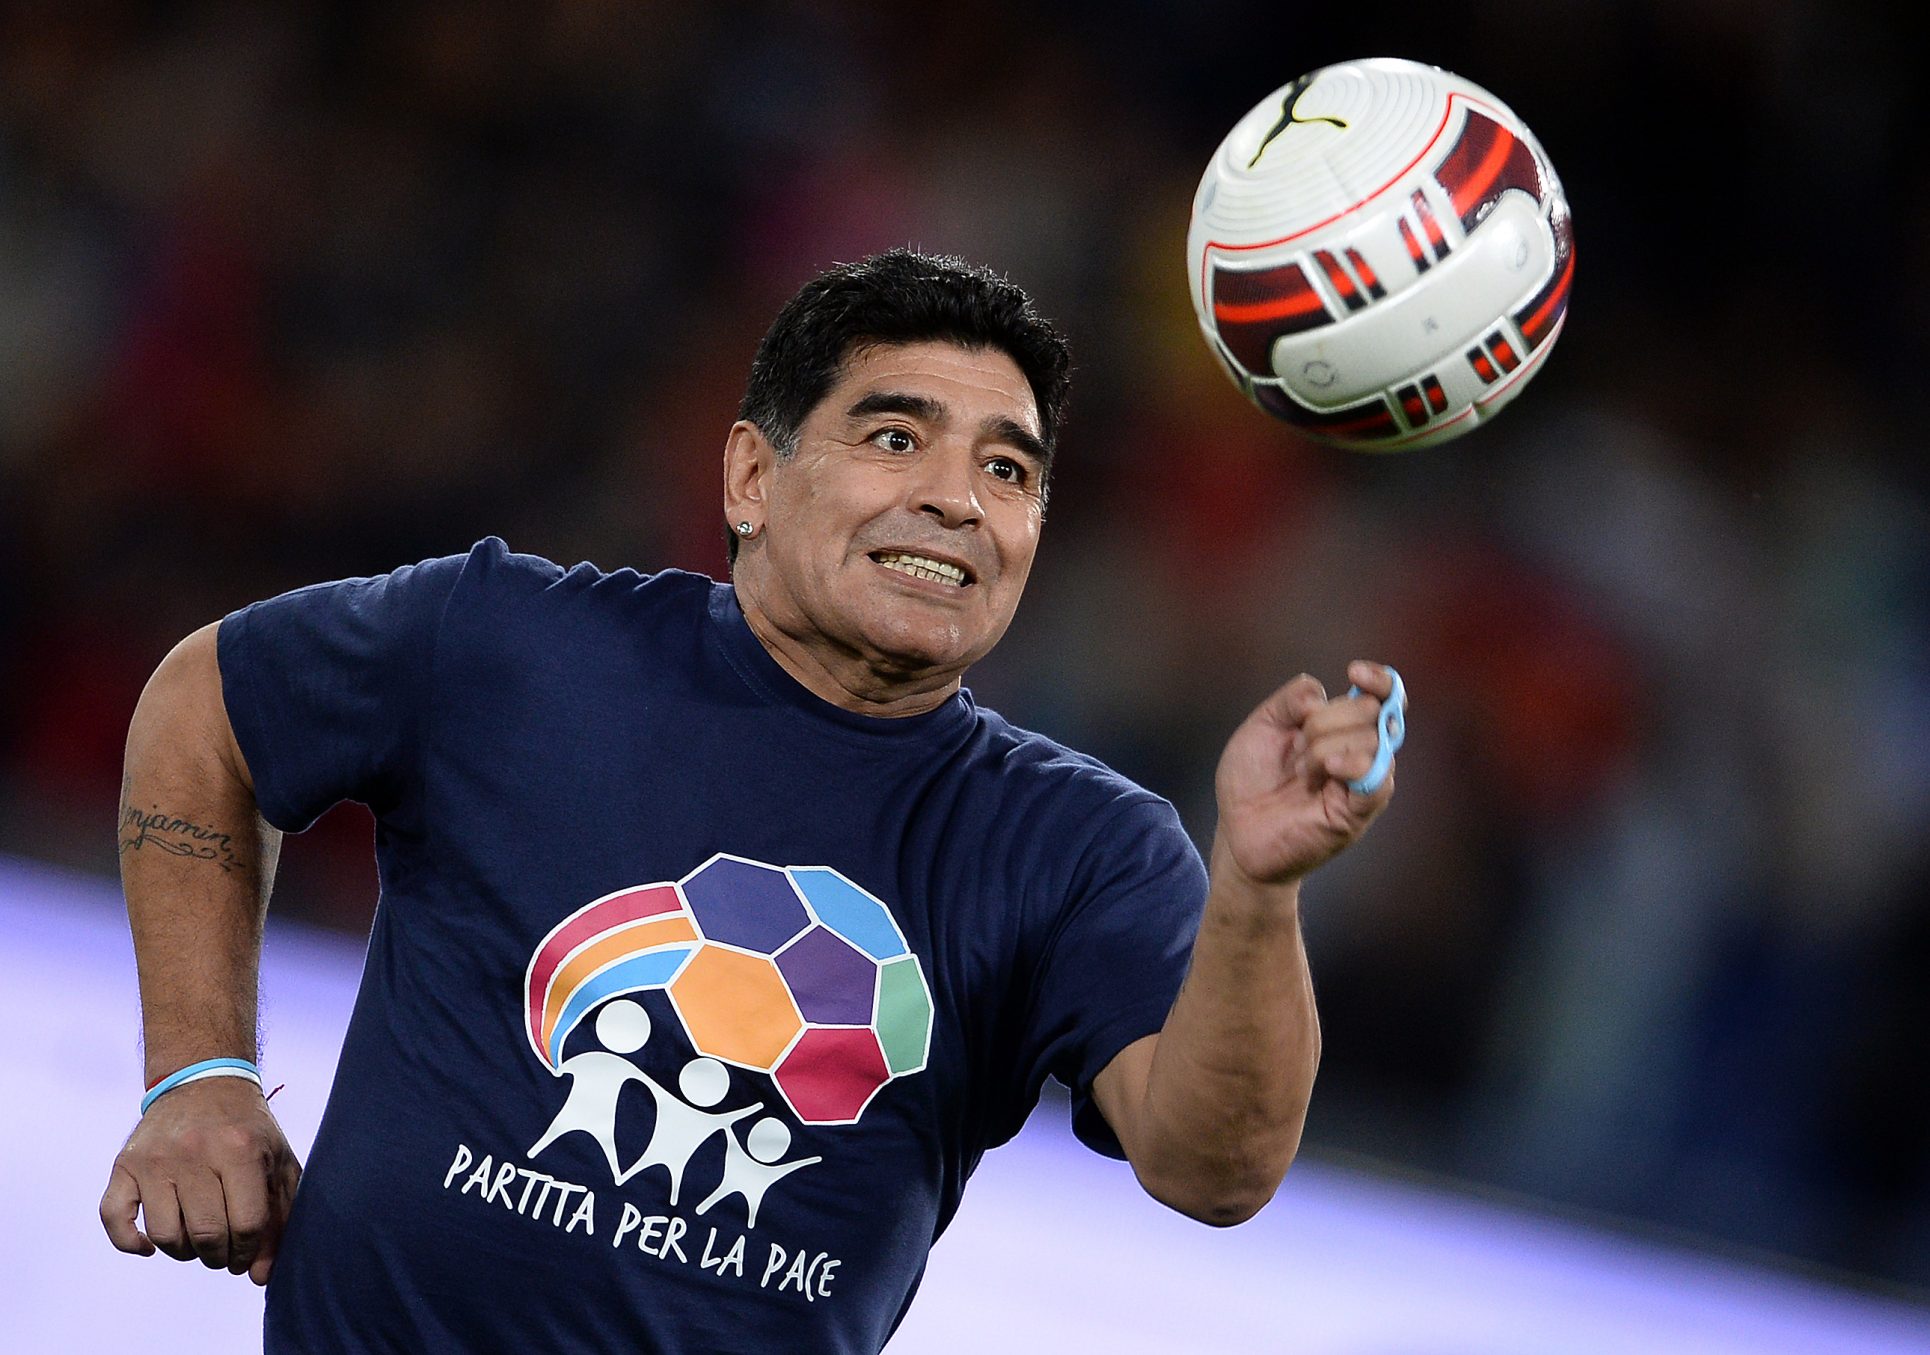 Video | Cuando Maradona hizo chota con Costa Rica y luego se retractó